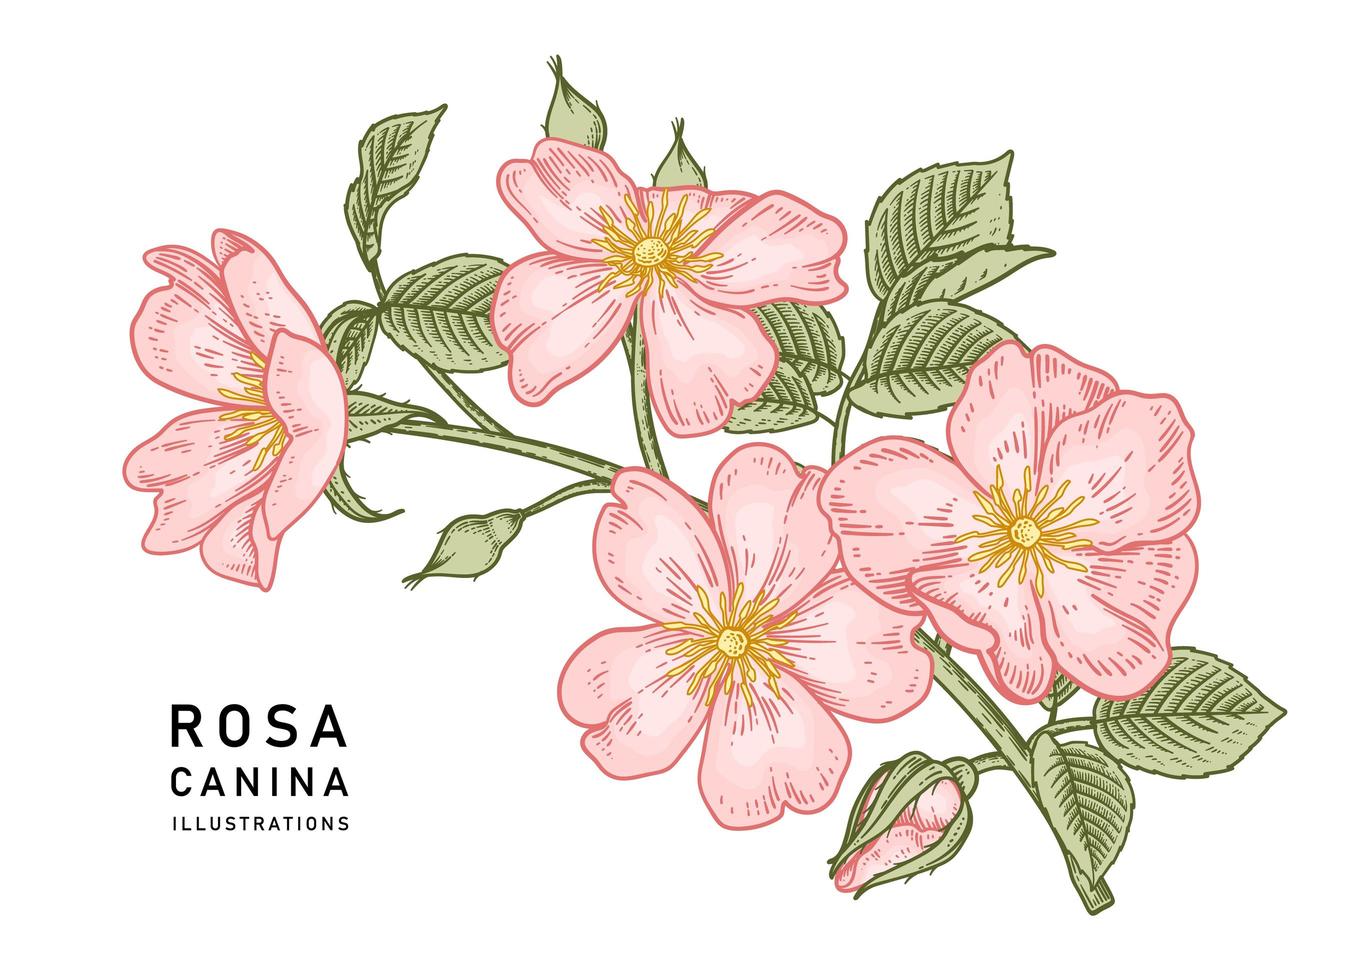 gren av rosa hundros eller rosa canina med blomma och blad handritade botaniska illustrationer vektor